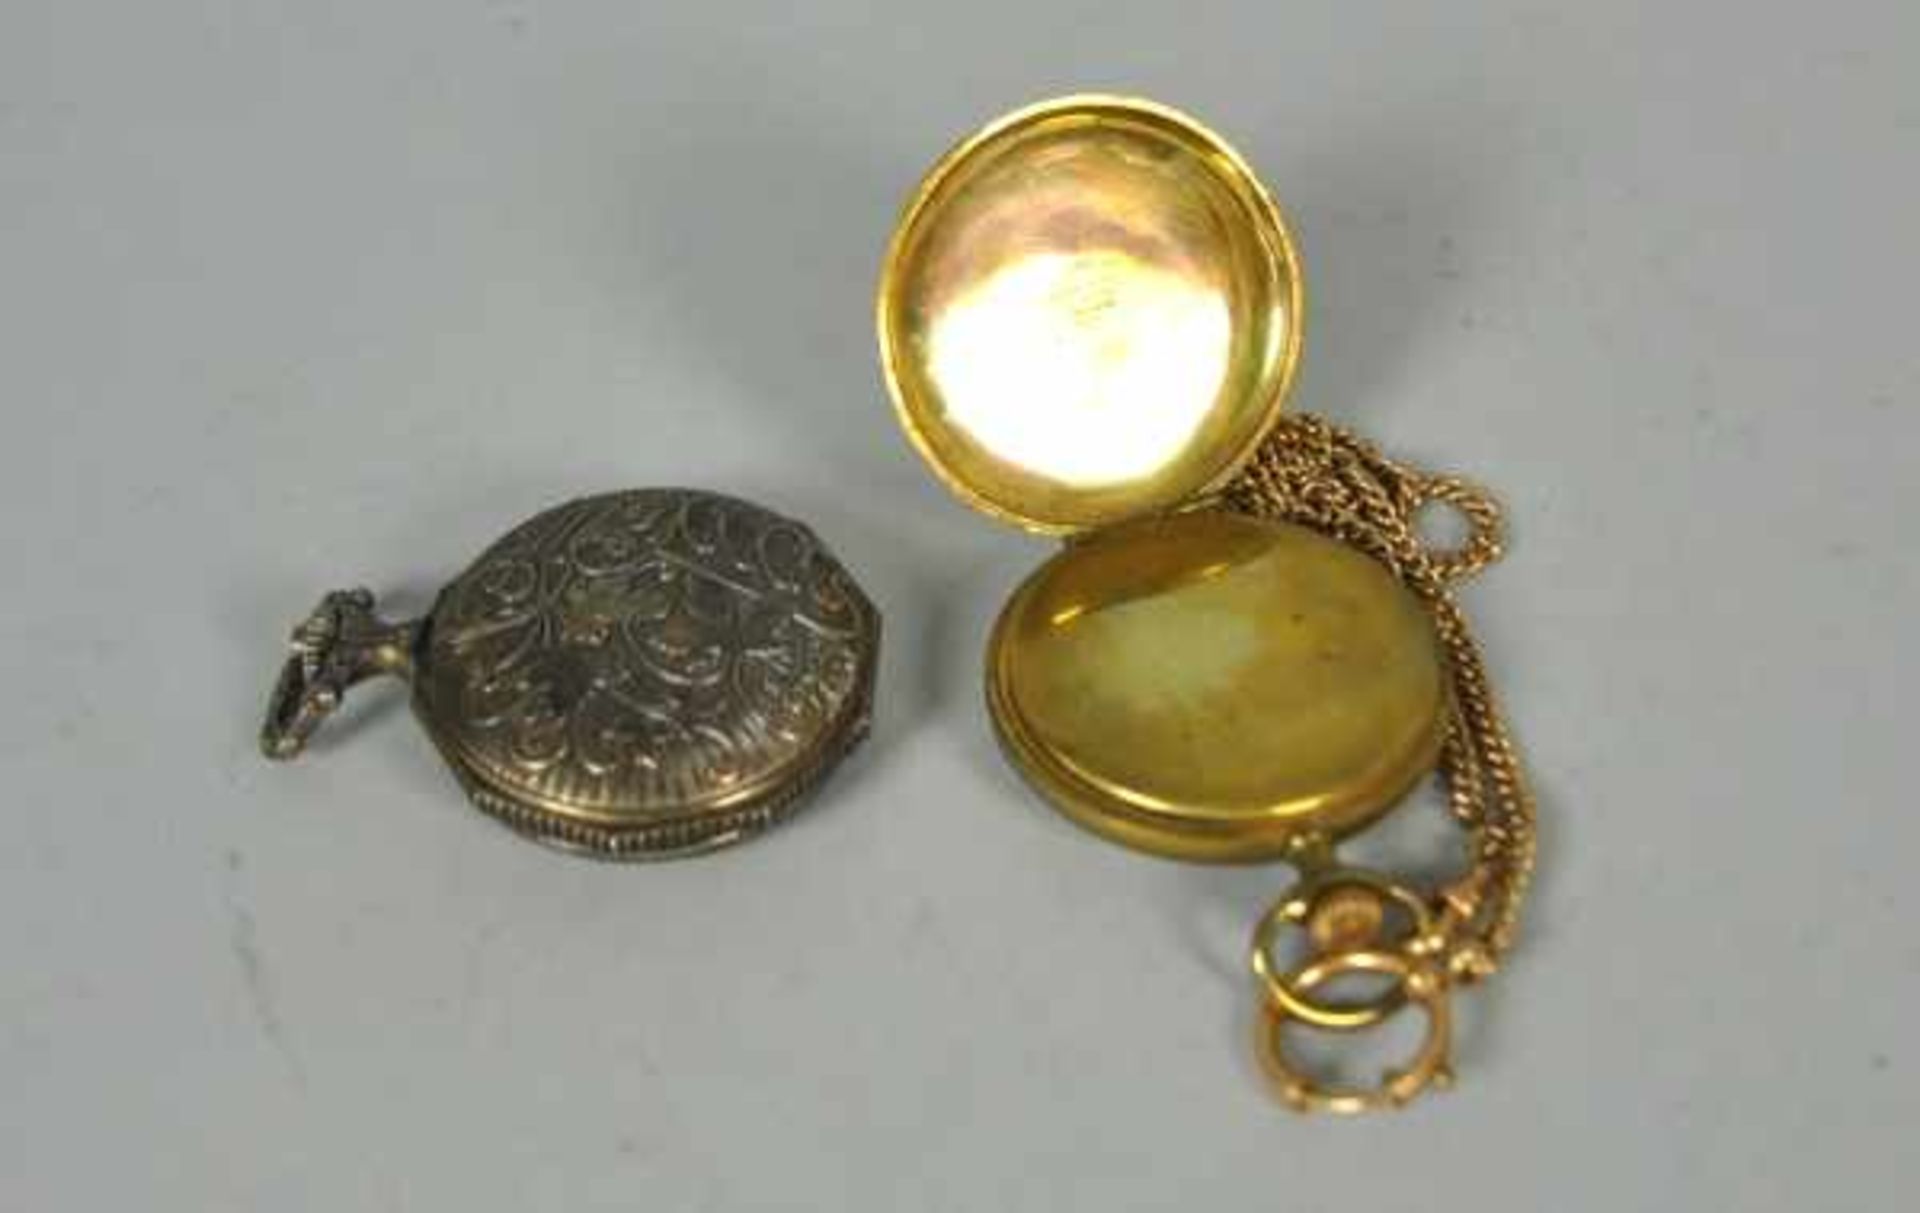 4 TASCHENUHREN verschieden, vergoldete Taschenuhr mit Emailzifferblatt, römischen Ziffern, kleine - Bild 4 aus 6